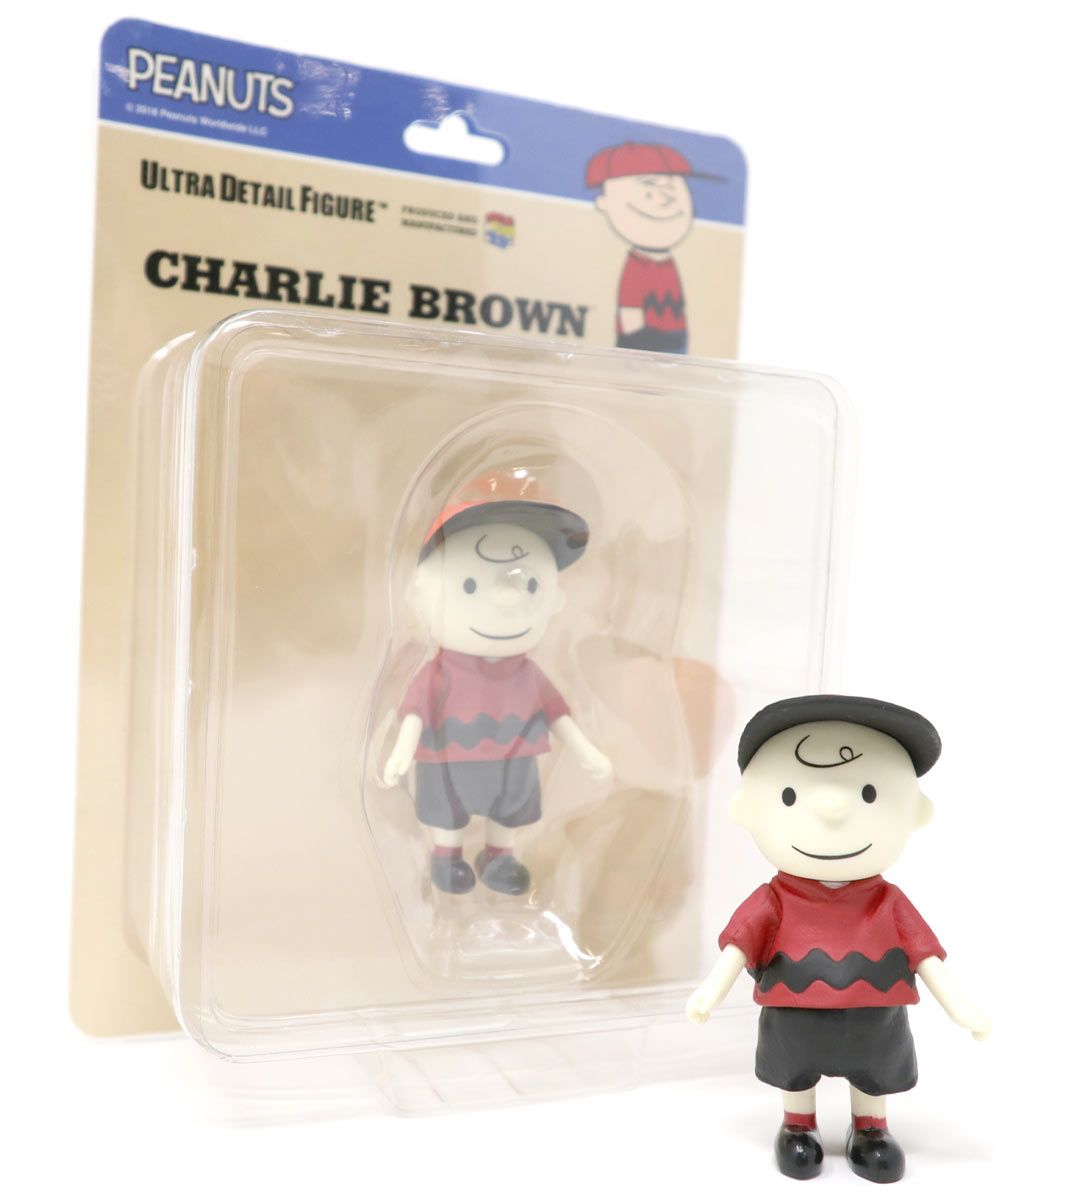 UDF Peanuts - Charlie Brown Vintage a.